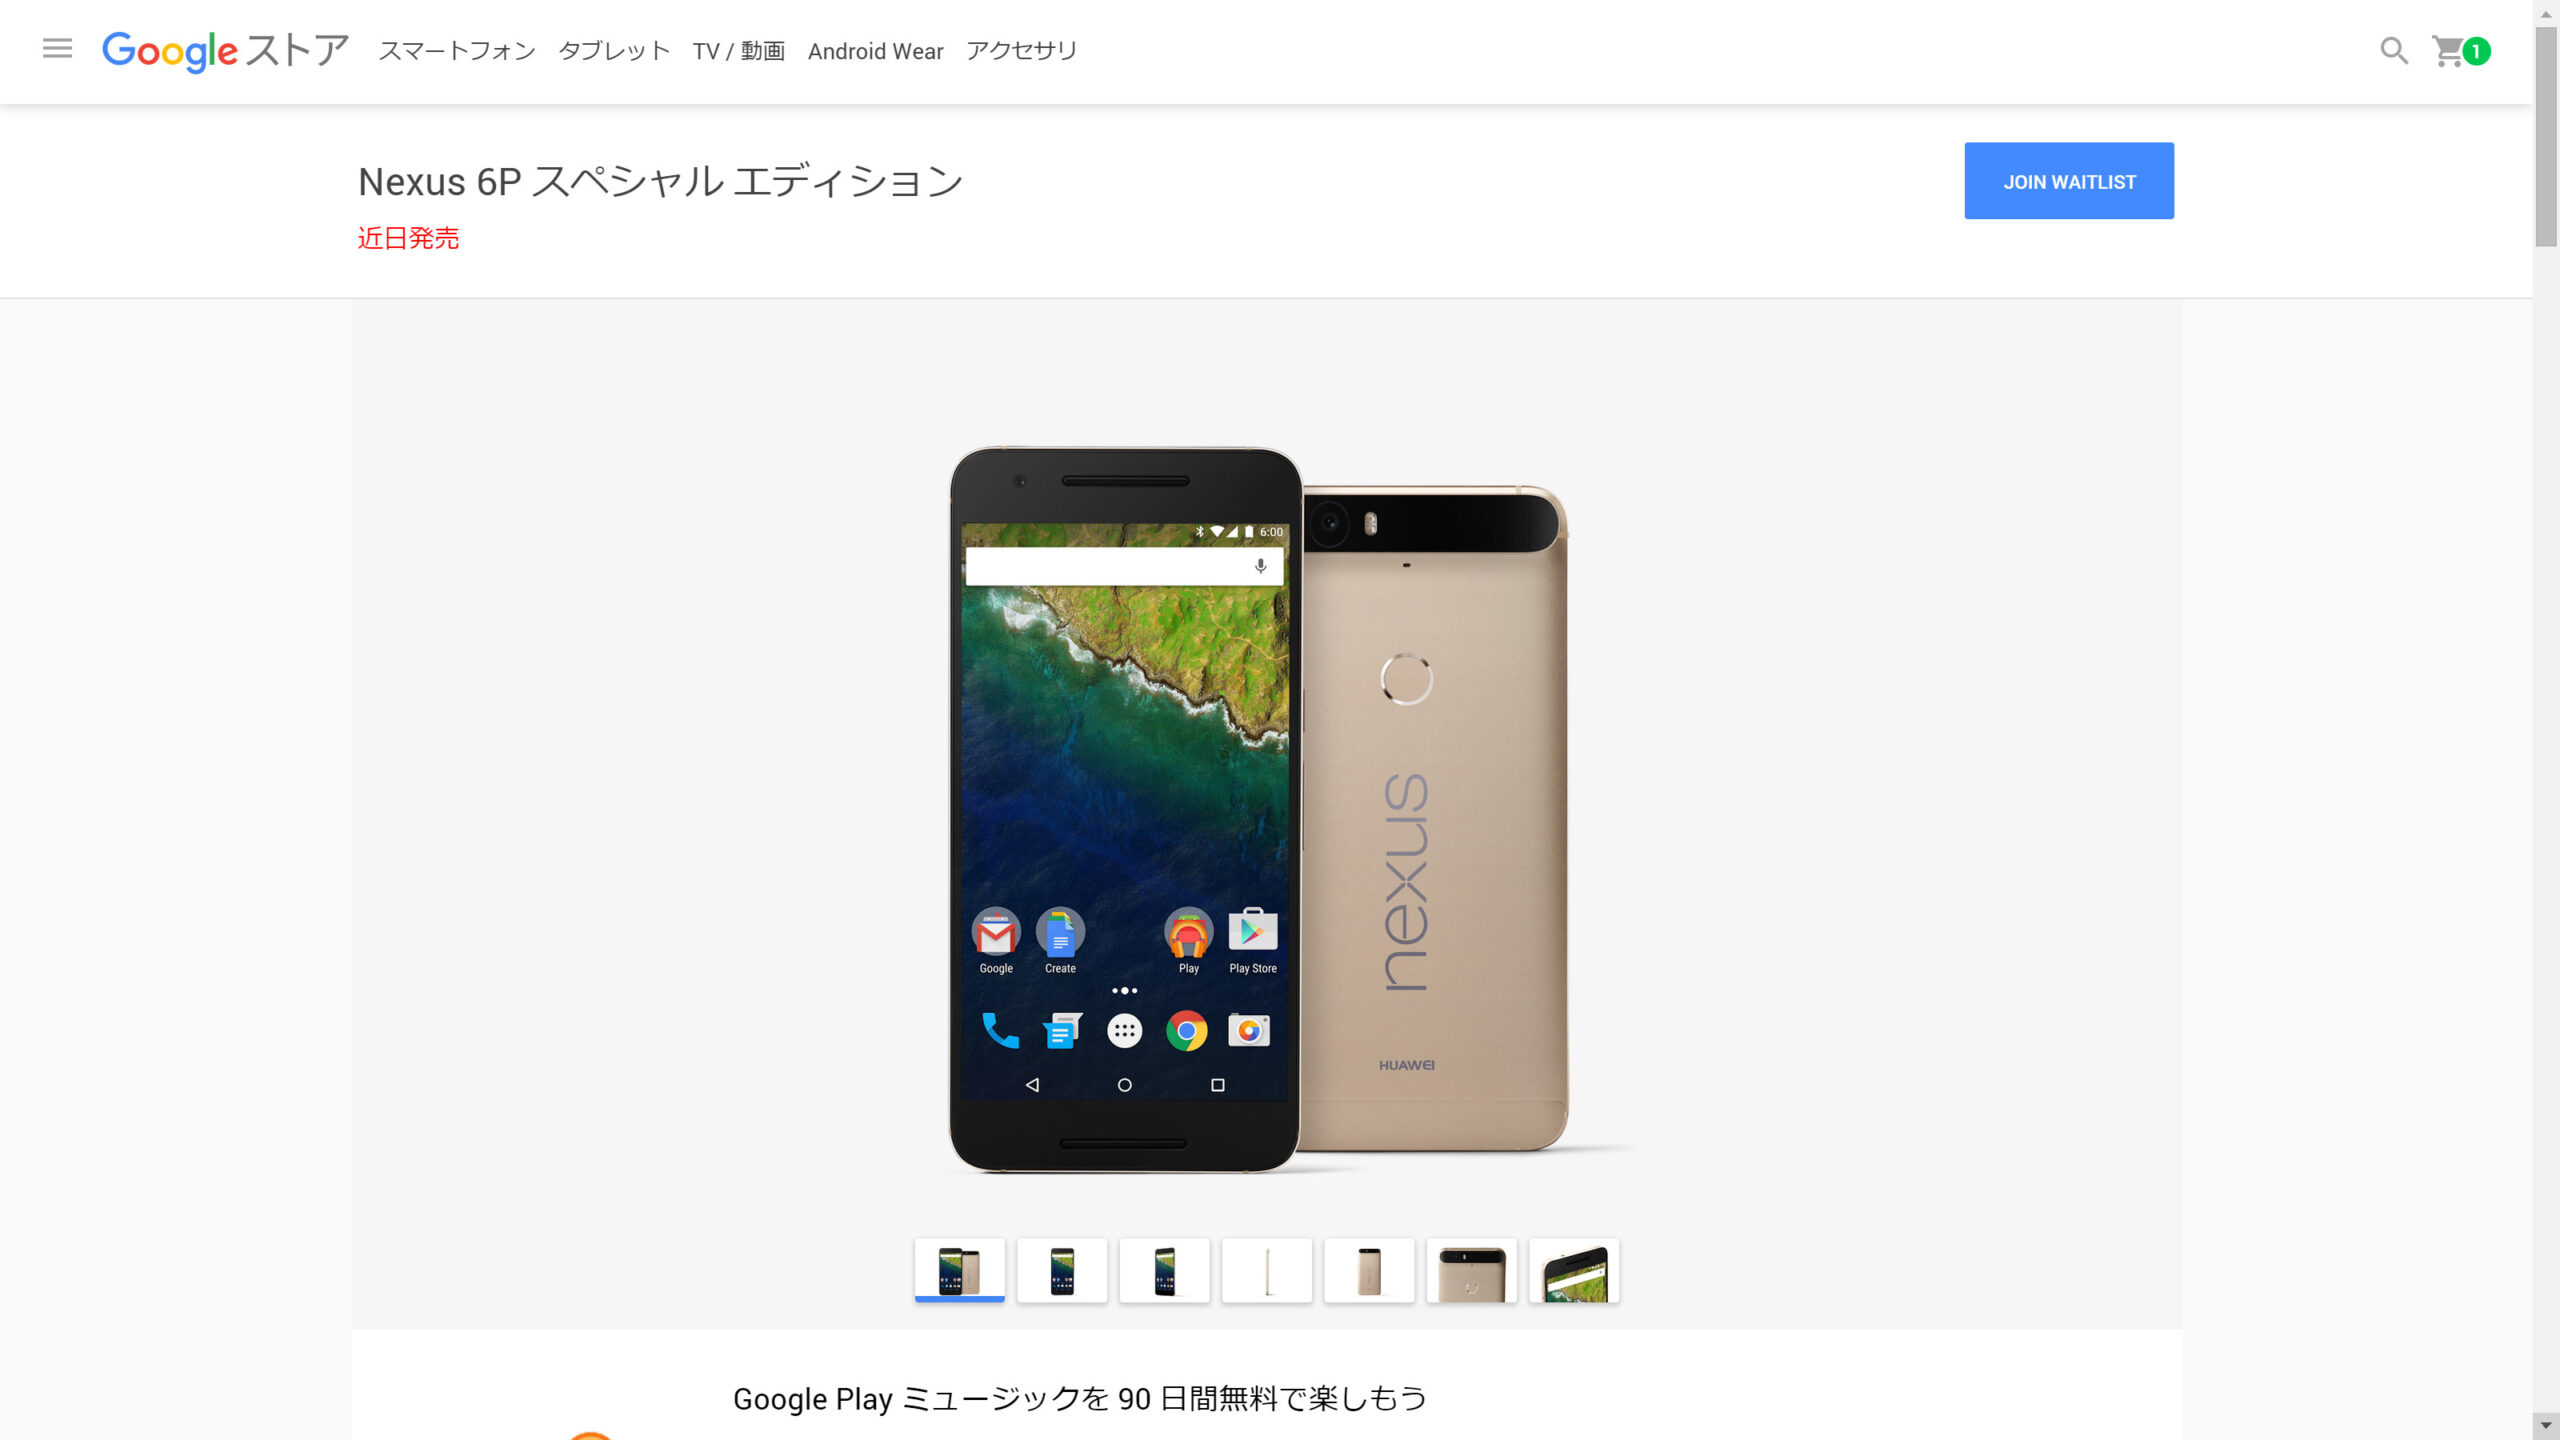 Golden Nexus 6P